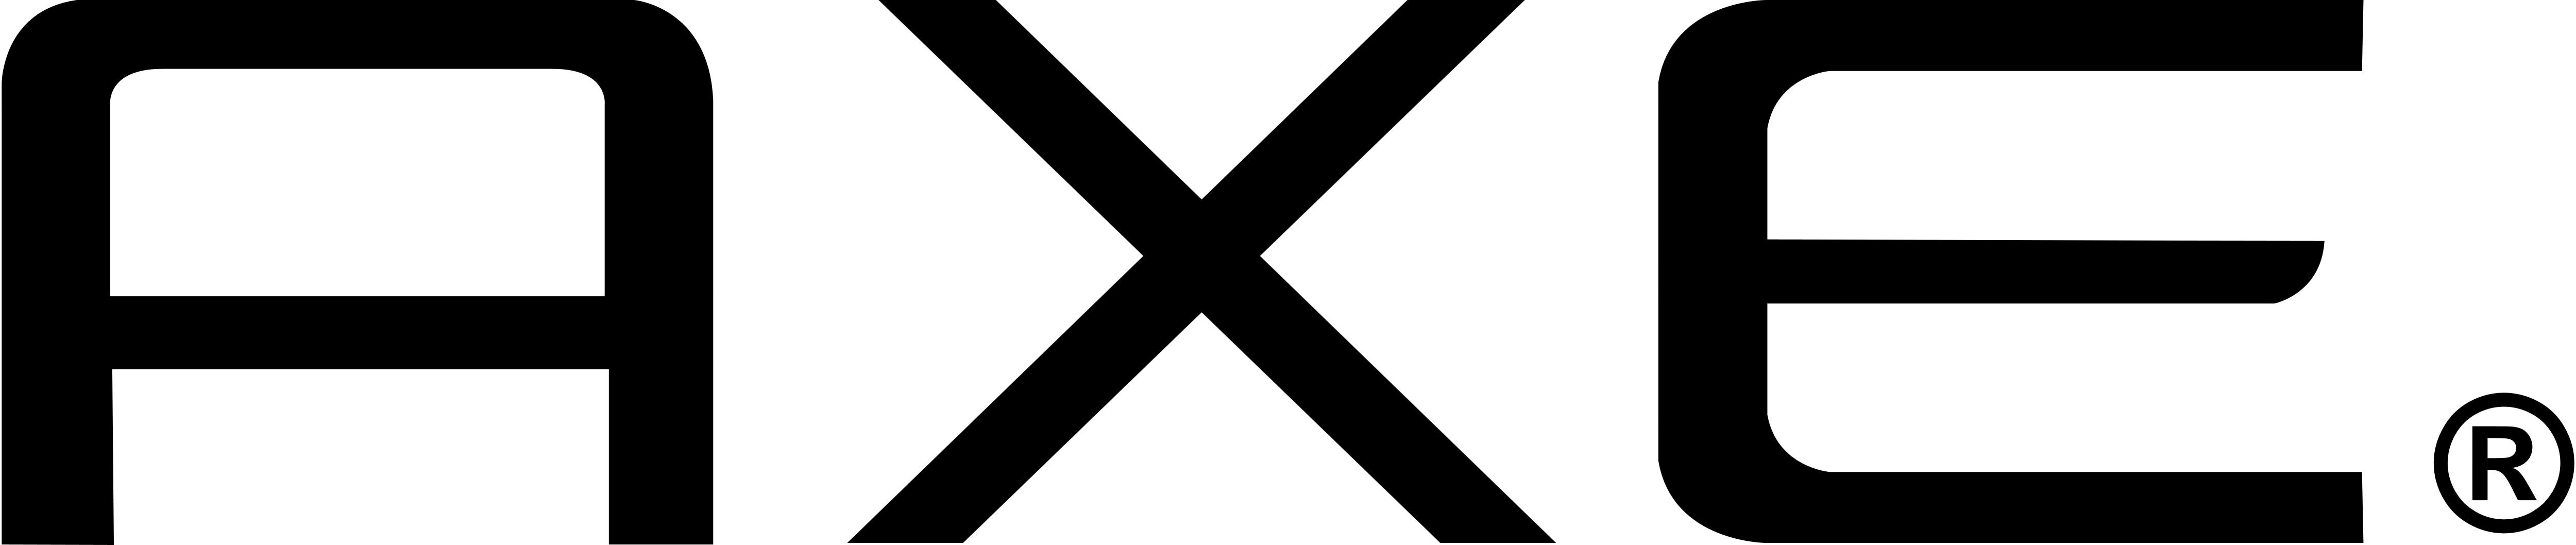 axe-vector-logo